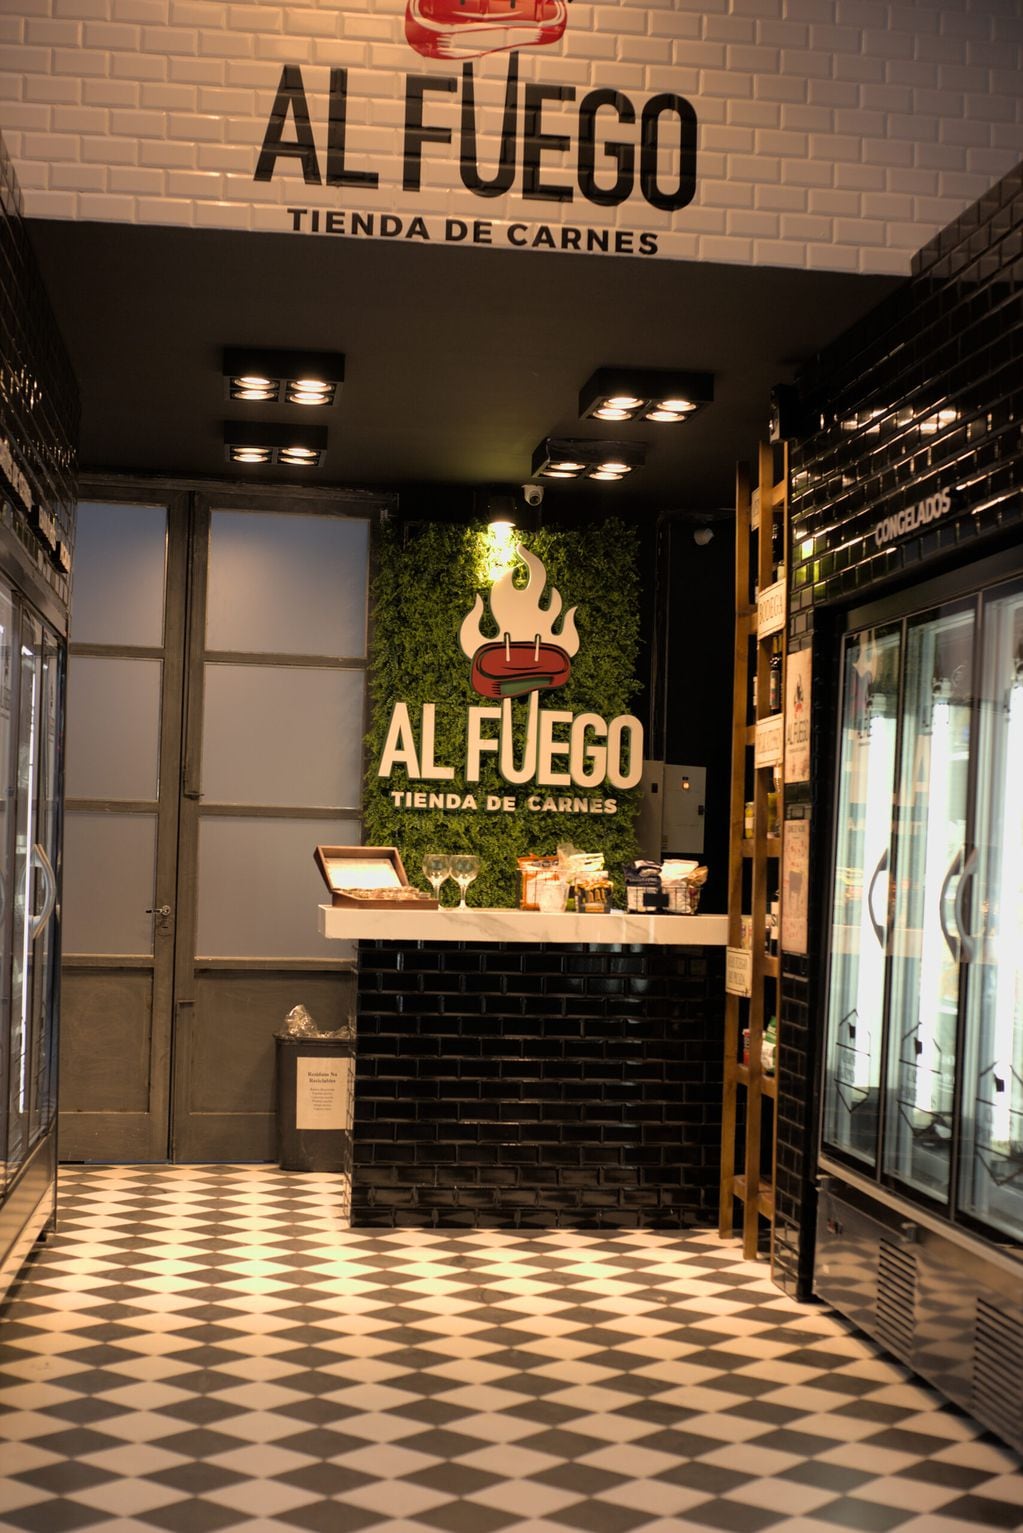 Este nuevo establecimiento, ubicado en Avellaneda y Belgrano de la Ciudad de Mendoza, ocupa uno de los locales comerciales que se construyeron en el lugar donde anteriormente funcionaba la estación de servicio Nogales.